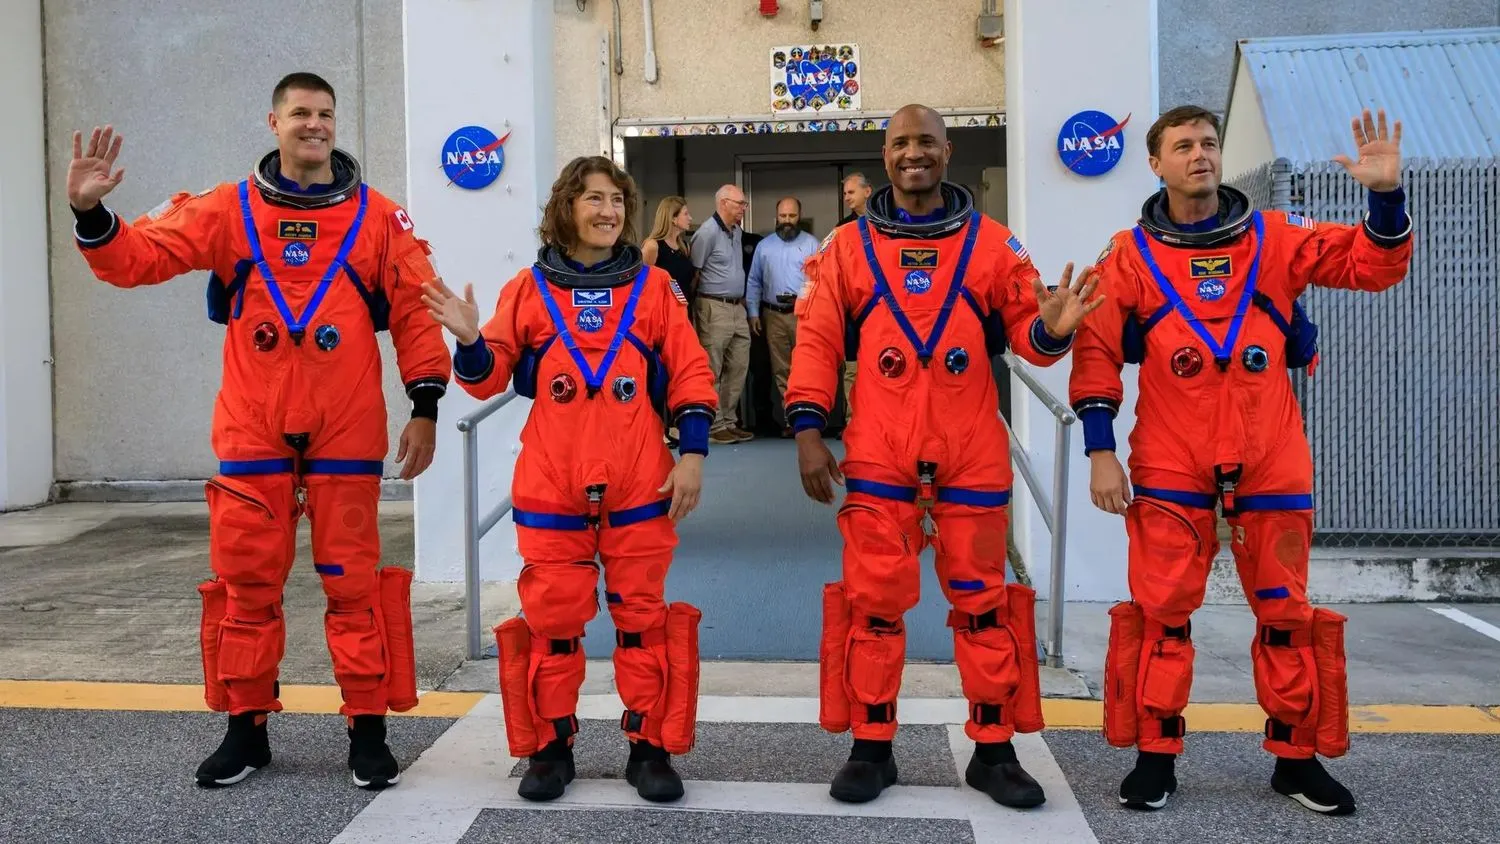 vier astronauten in orangefarbenen raumanzügen winken vor einem mit nasa-logos geschmückten eingang in die kamera